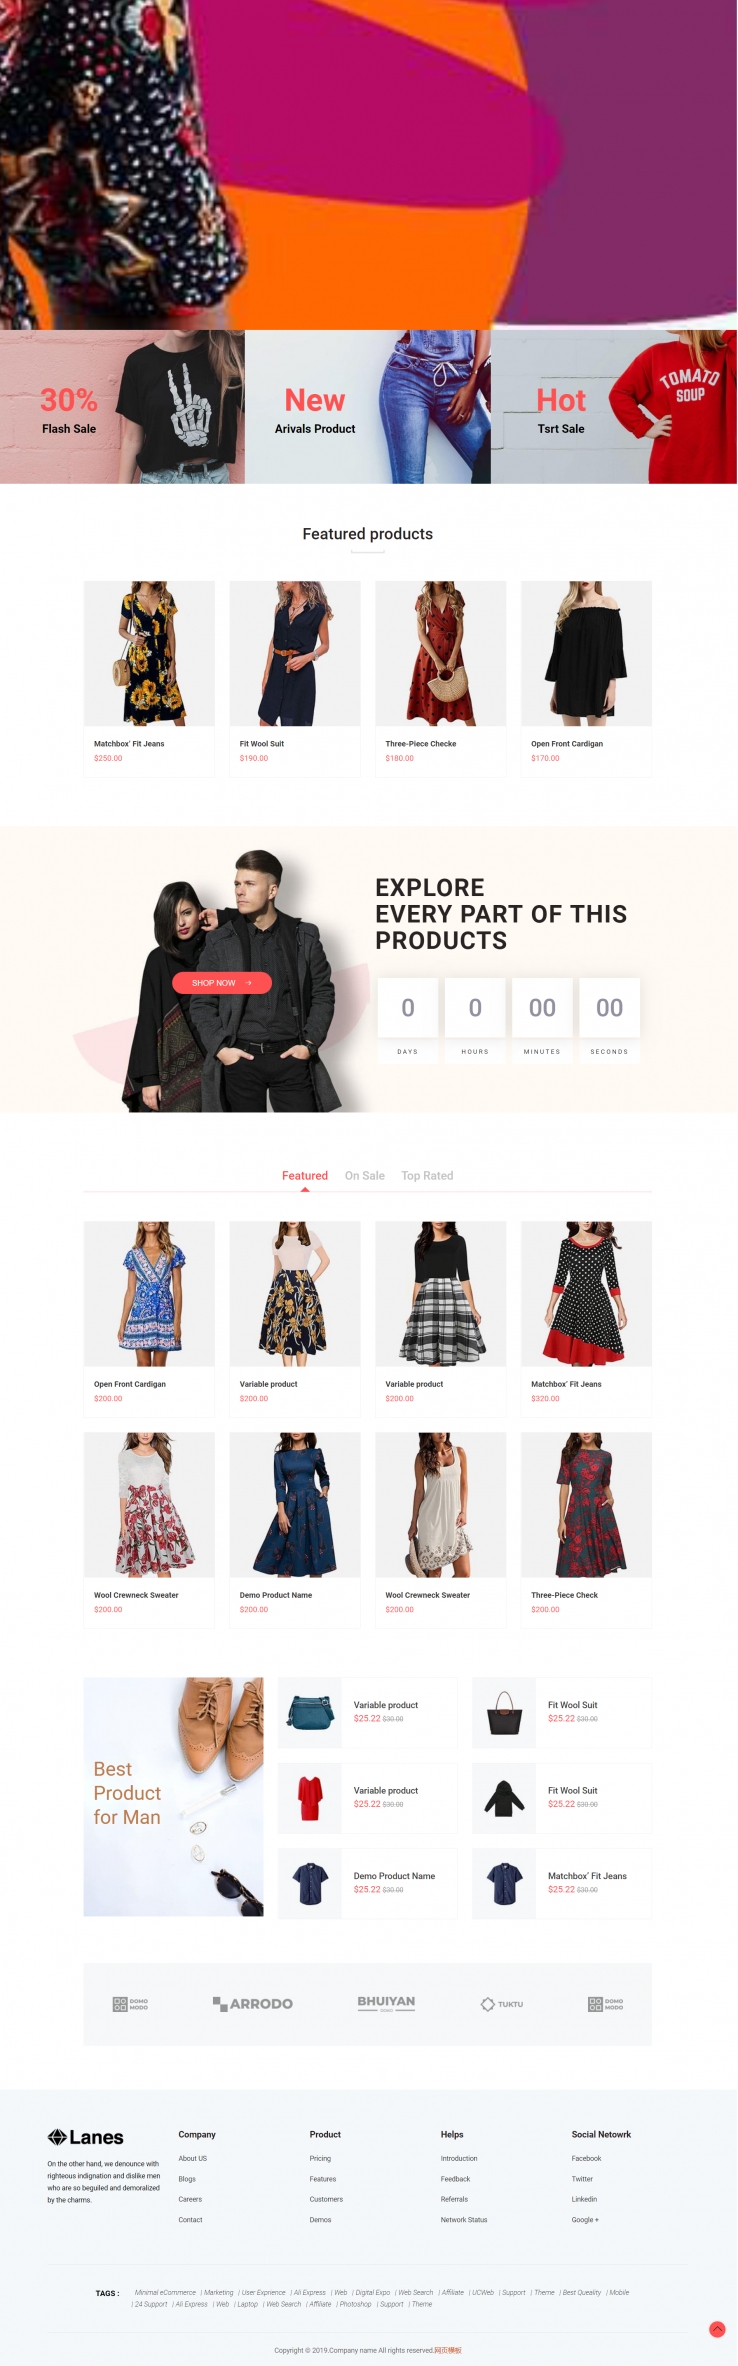 红色简洁风格的时尚女性服装商城网站源码下载